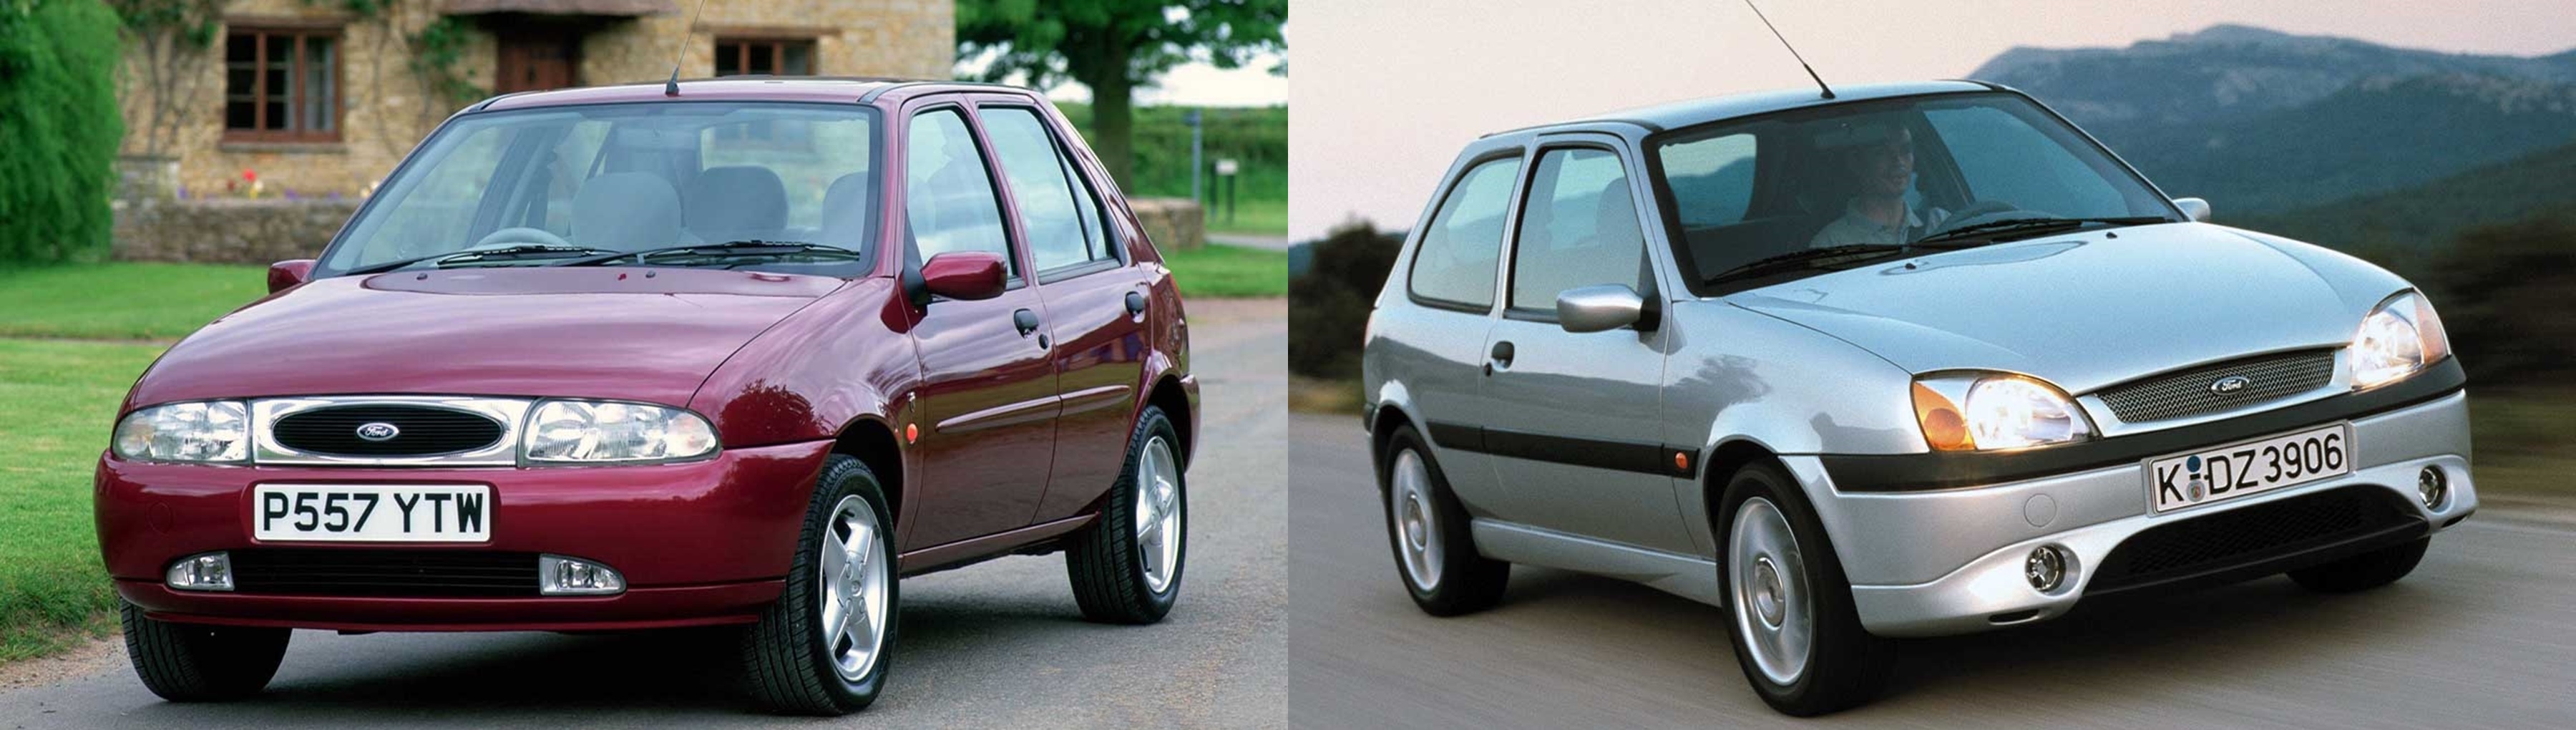  Ford Fiesta teve apelidos de "Chorão" e "Gatinho"